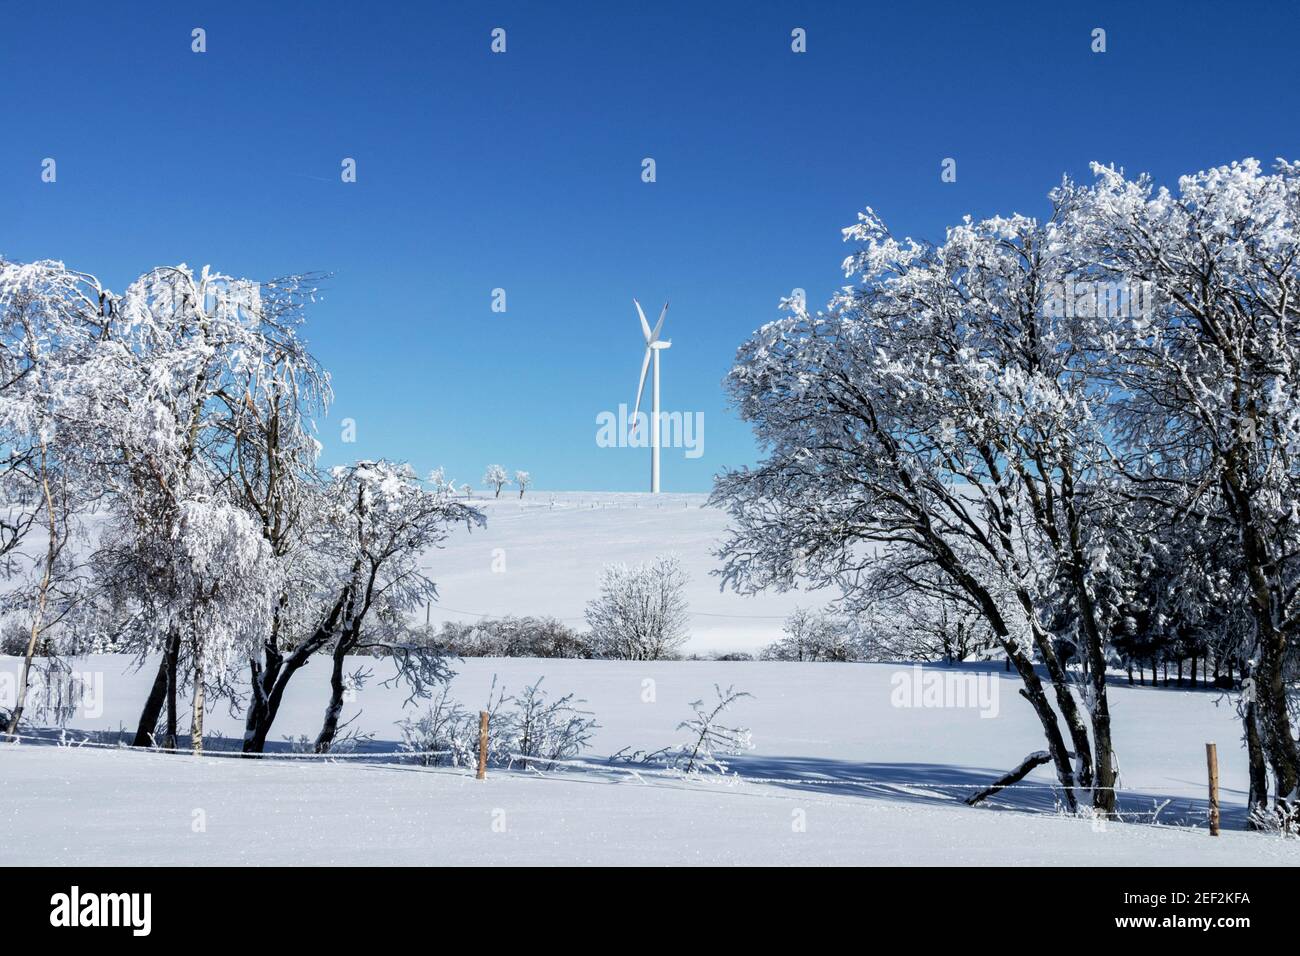 Paesaggio invernale, una turbina eolica nella campagna innevata, energia alternativa Foto Stock